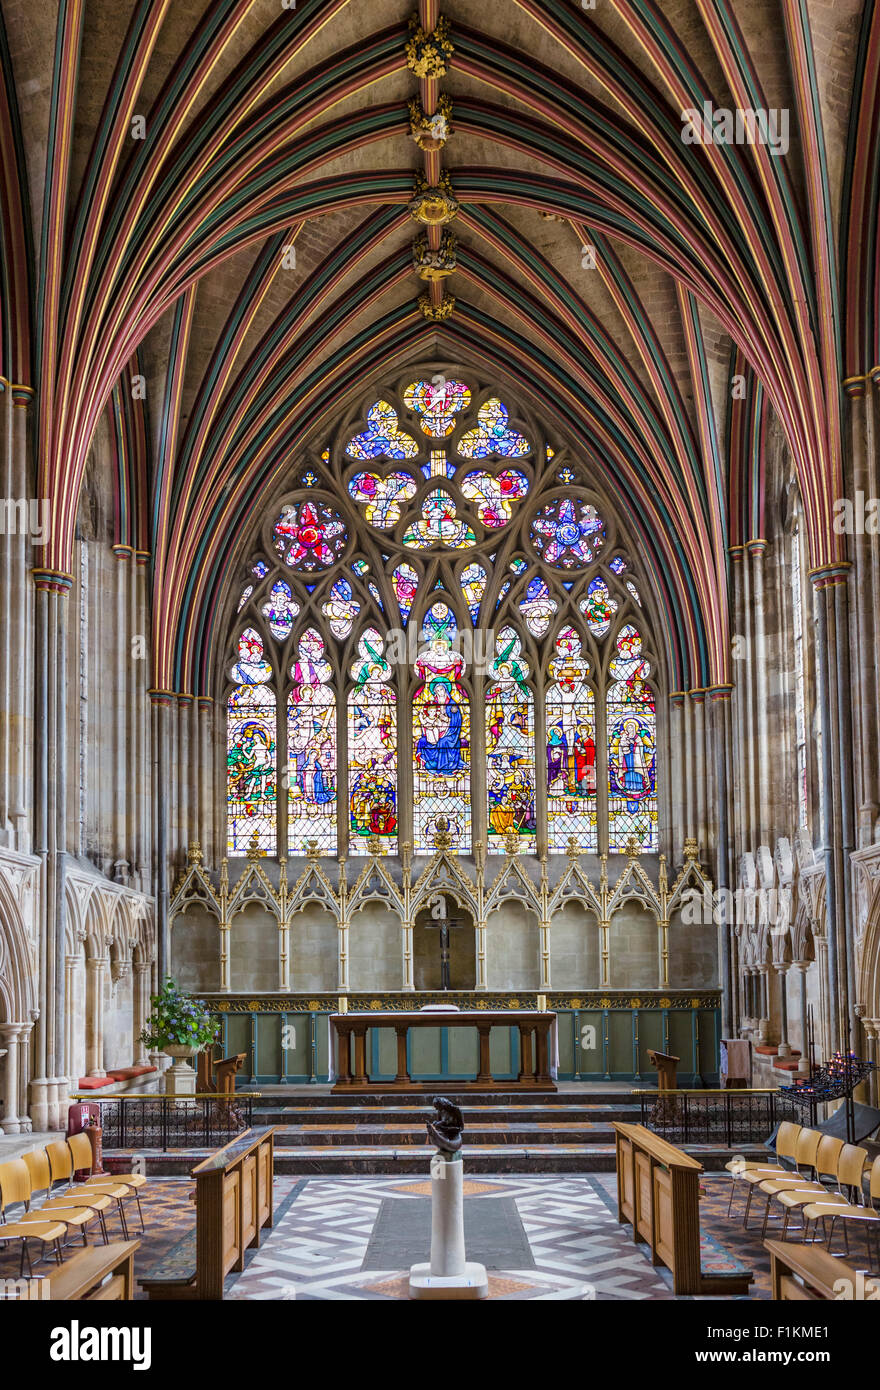 Vitrail dans la chapelle dame en cathédrale d'Exeter, Exeter, Devon, England, UK Banque D'Images